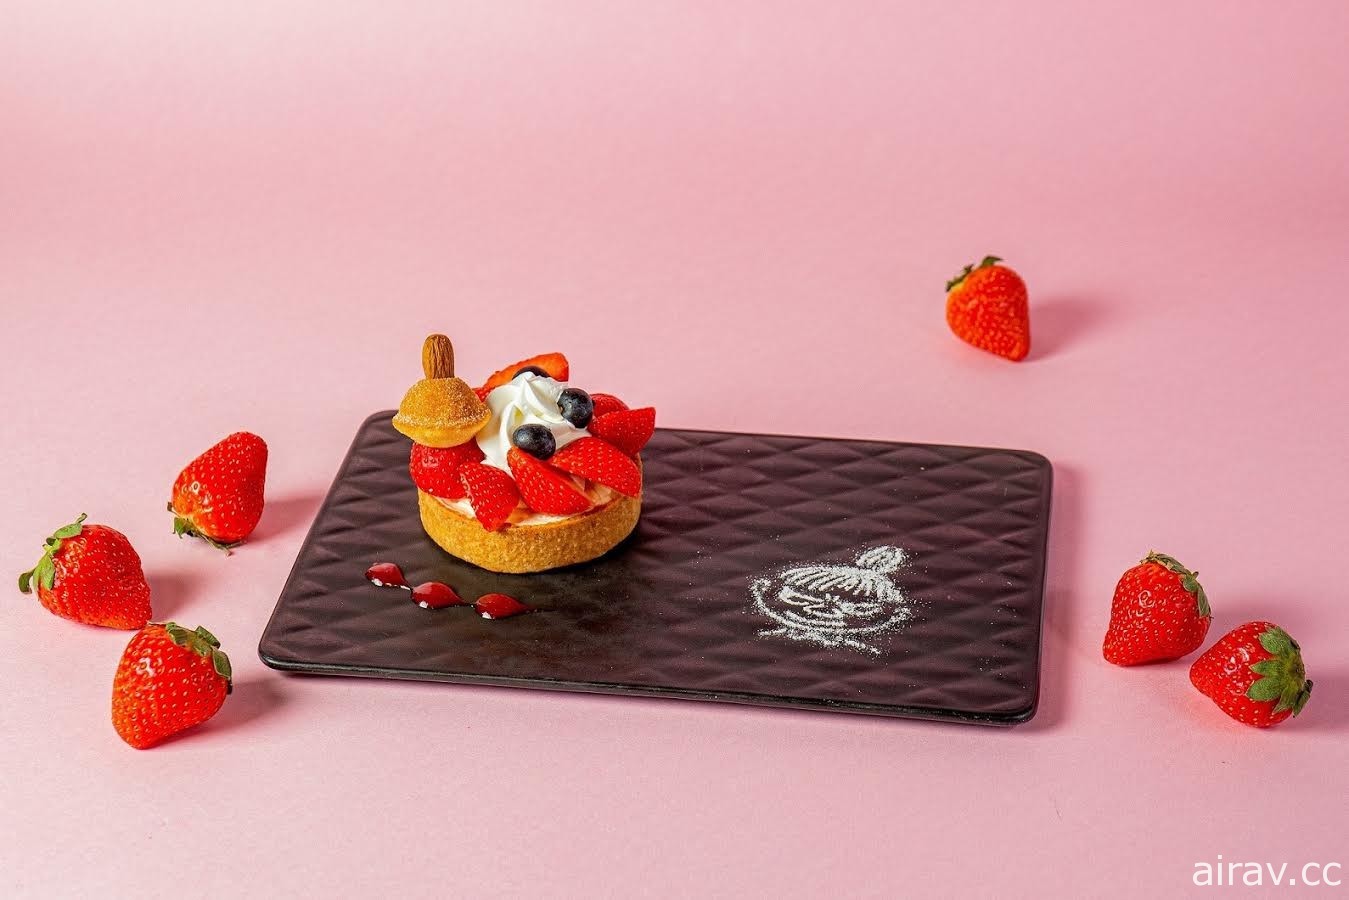 嚕嚕米主題餐廳 27 日起推出「嚕嚕米你好莓」期間限定菜單